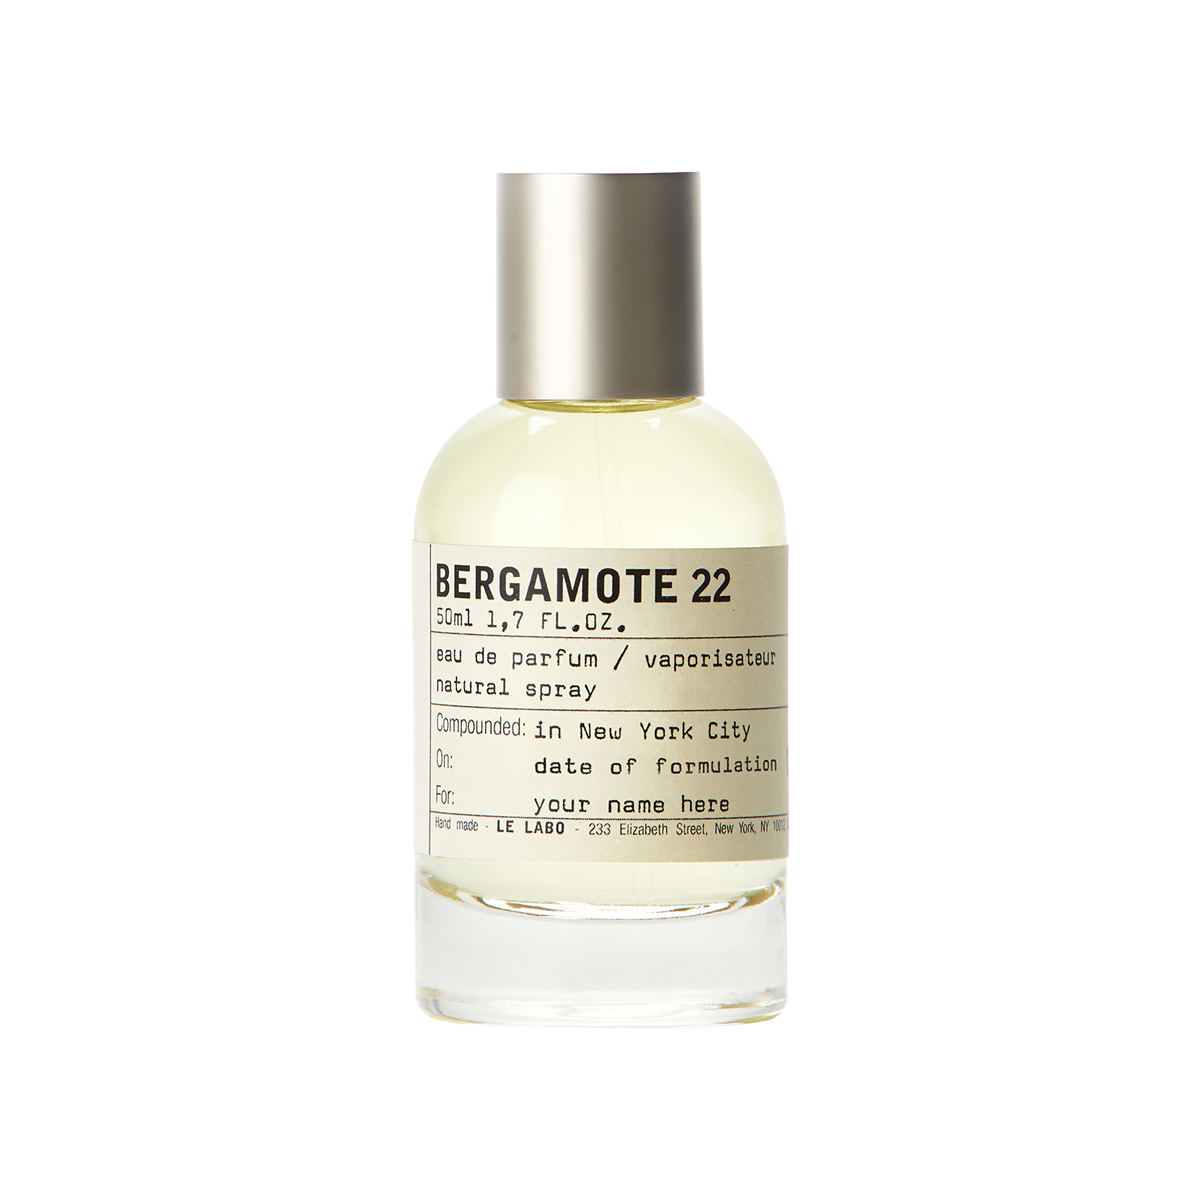 Le Labo fragrances - Bergamote 22 Eau de Parfum